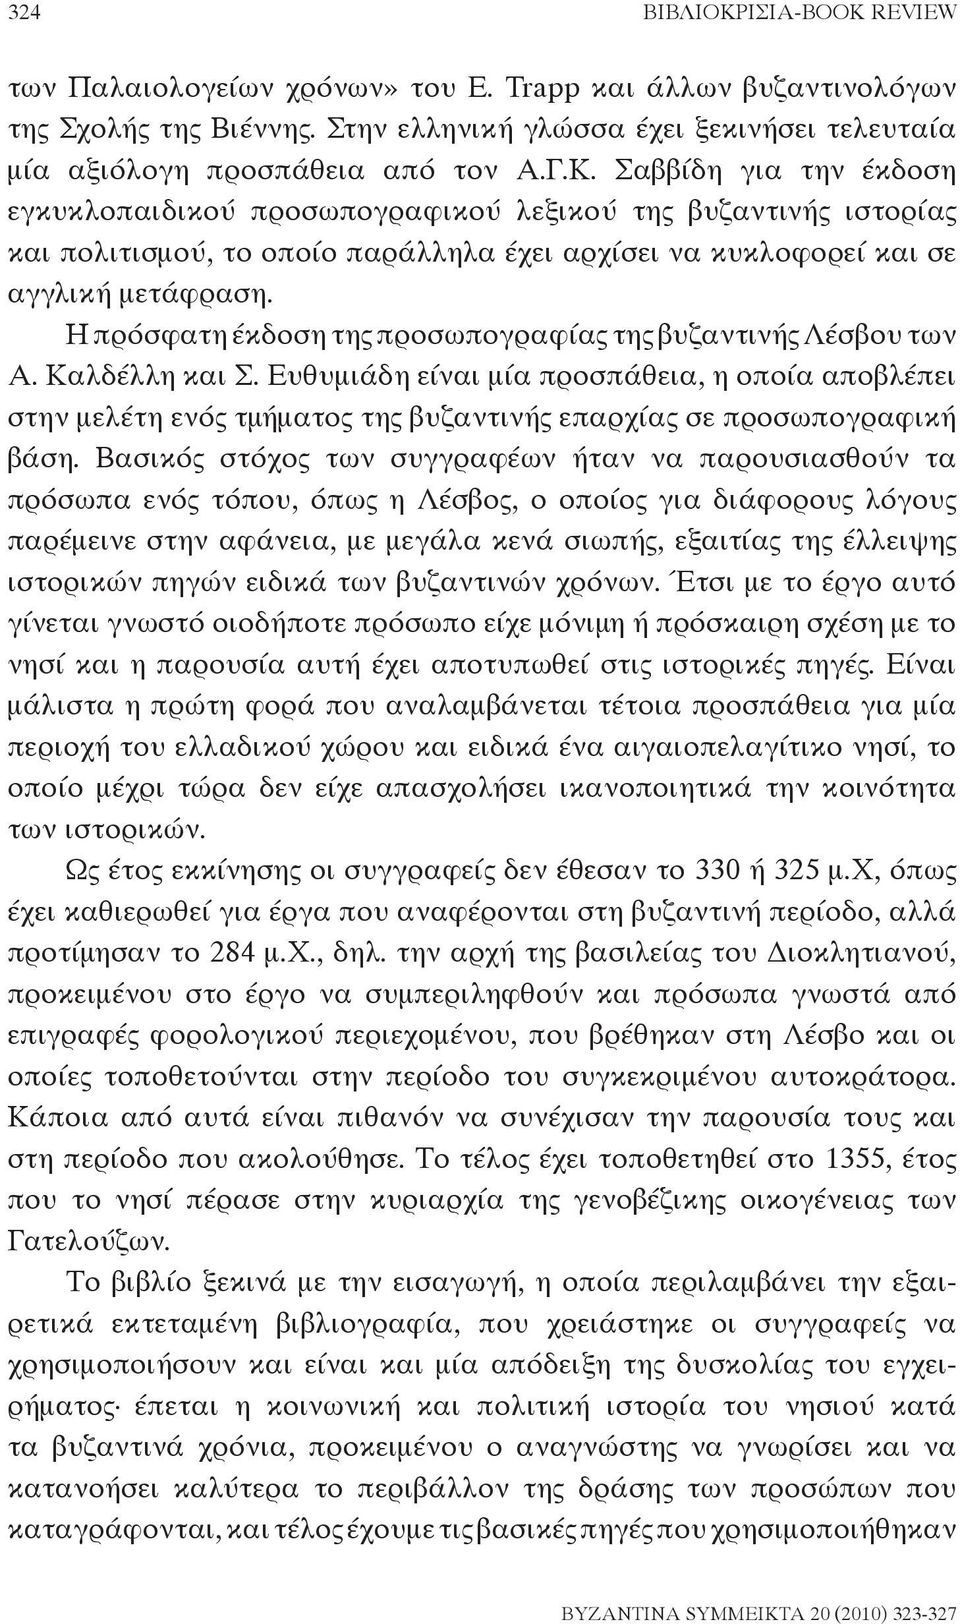 Η πρόσφατη έκδοση της προσωπογραφίας της βυζαντινής Λέσβου των Α. Καλδέλλη και Σ.